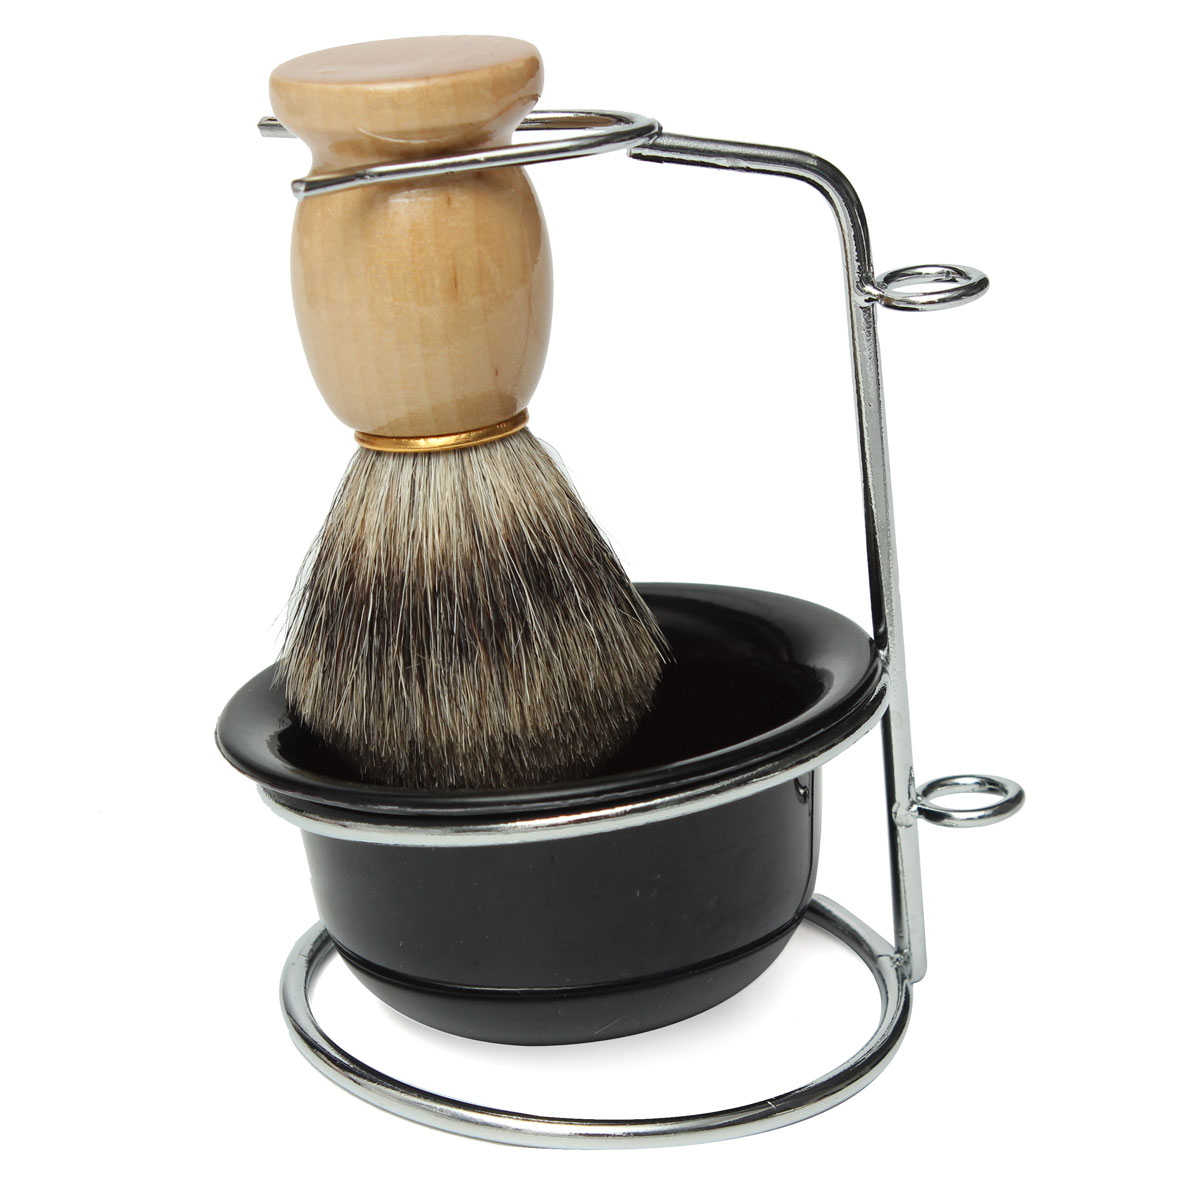 

Professional Badger Hair Shaving Brush Black Bowl Stainless Steel Stand Shaving Kits